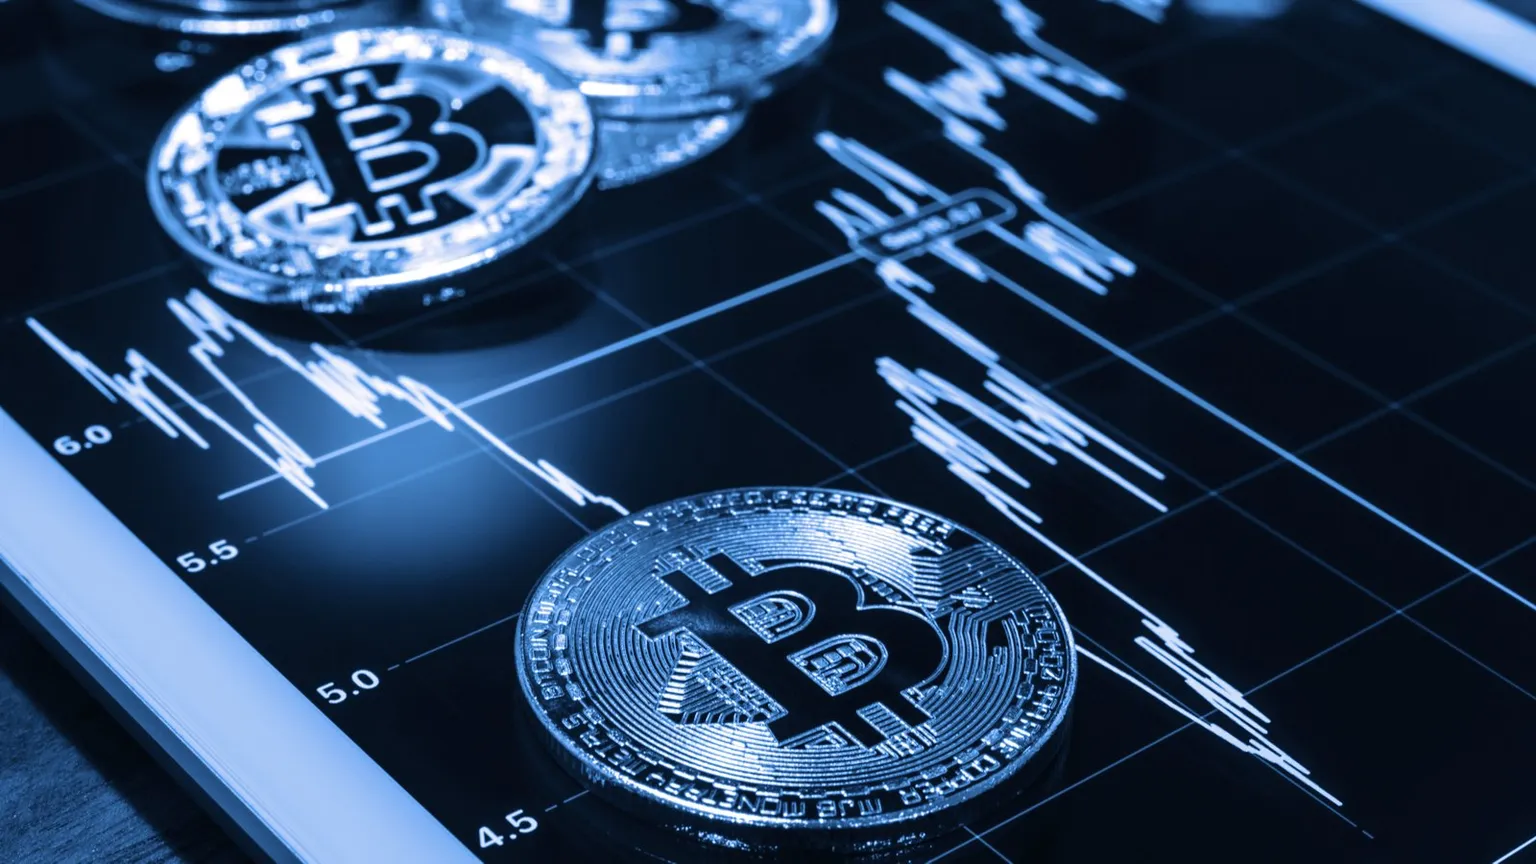 Fondos de Bitcoin. Imagen: Shutterstock